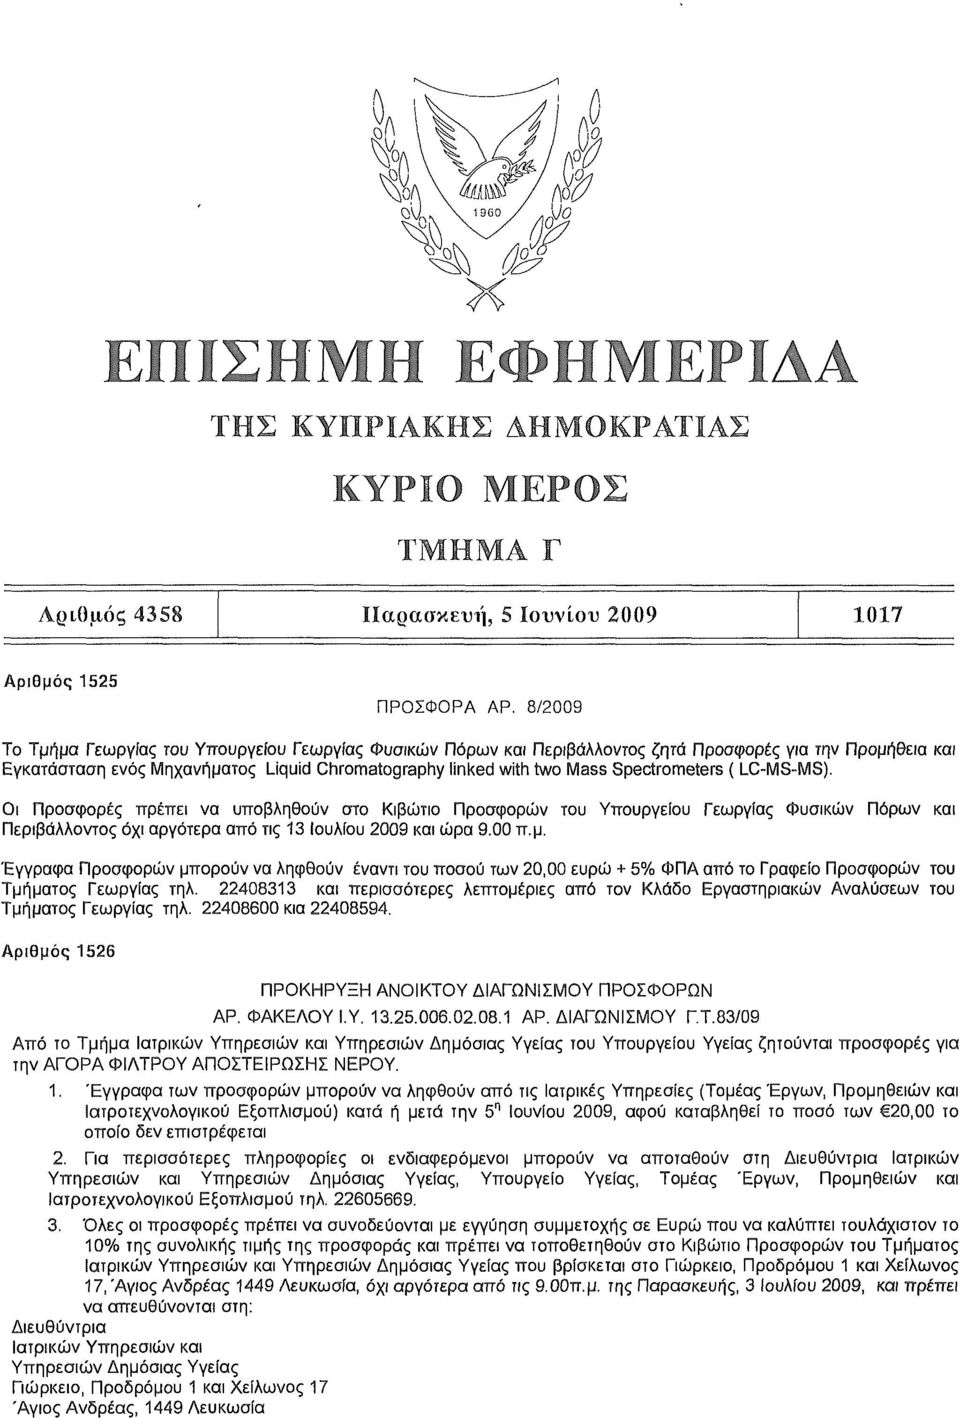 Spectrometers ( LC-MS-MS). Οι Προσφορές πρέπει να υποβληθούν στο Κιβώτιο Προσφορών του Υπουργείου Γεωργίας Φυσικών Πόρων και Περιβάλλοντος όχι αργότερα από τις 13 Ιουλίου 2009 και ώρα 9.00 π.μ.